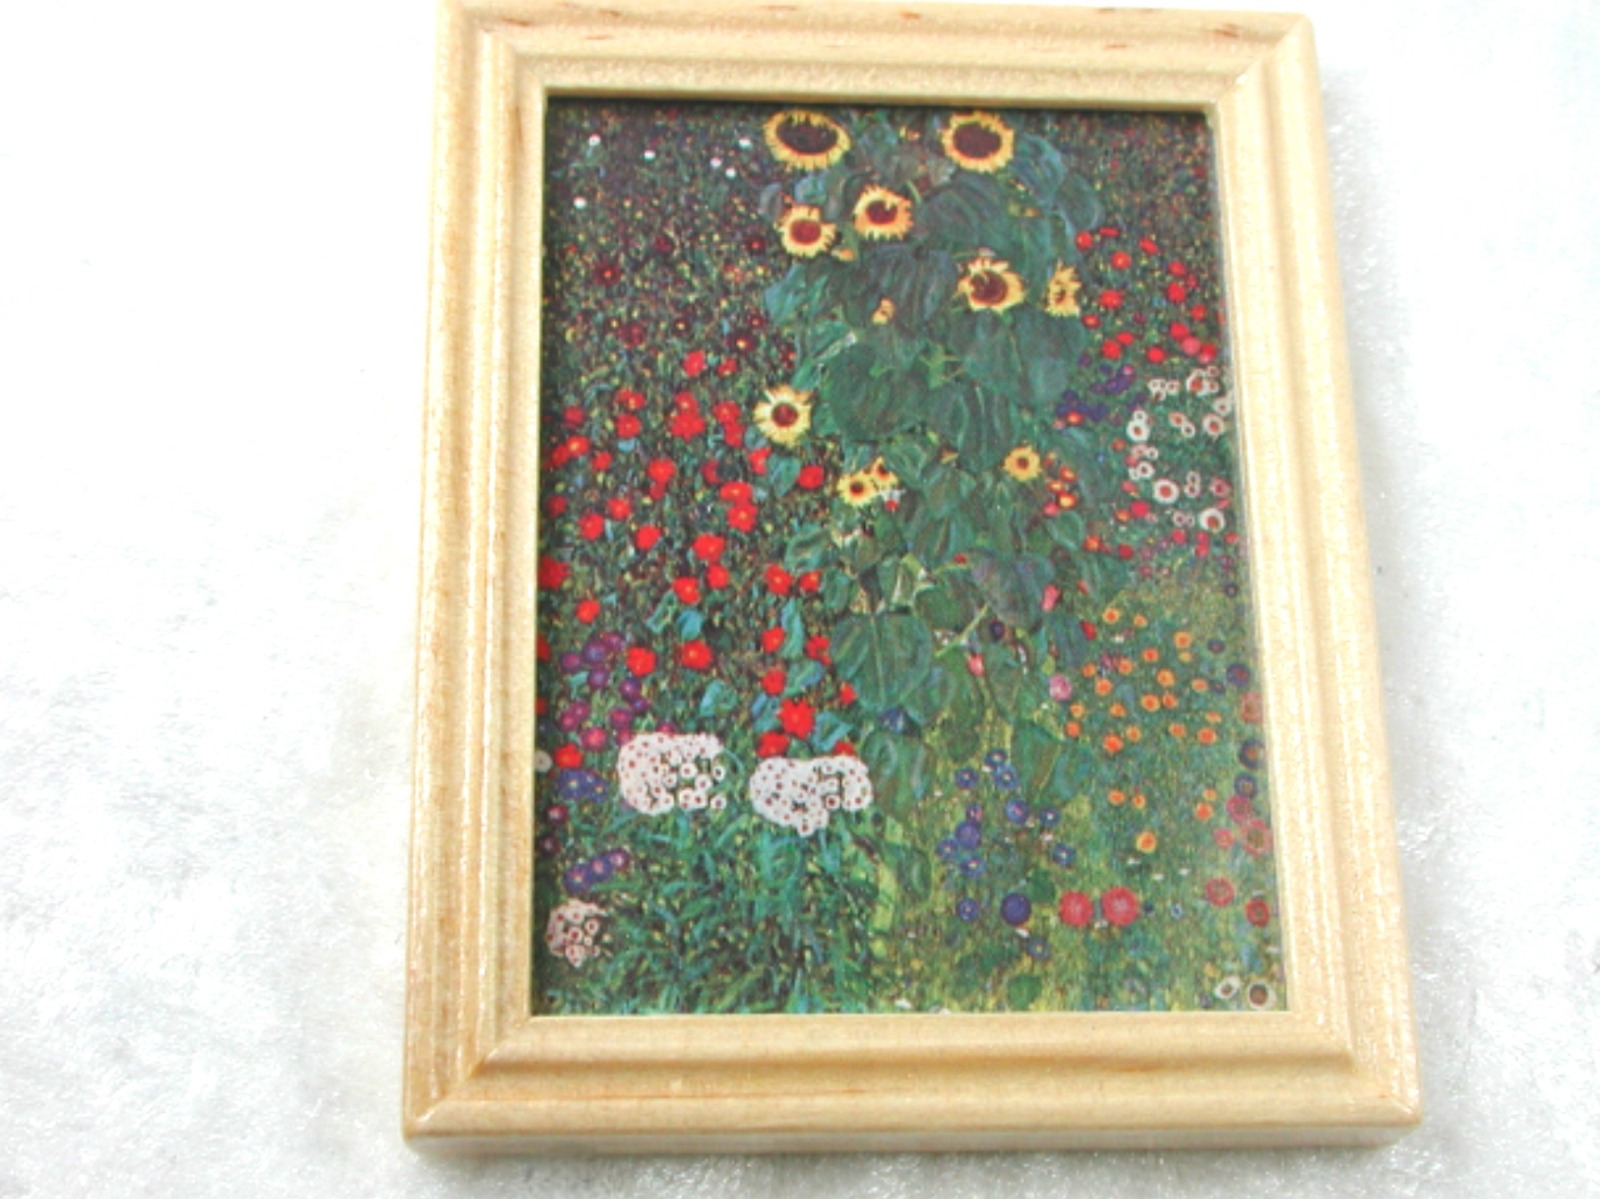 Gemäldekopie Bauerngarten im Holzrahmen 7 x 55 x 05 cm